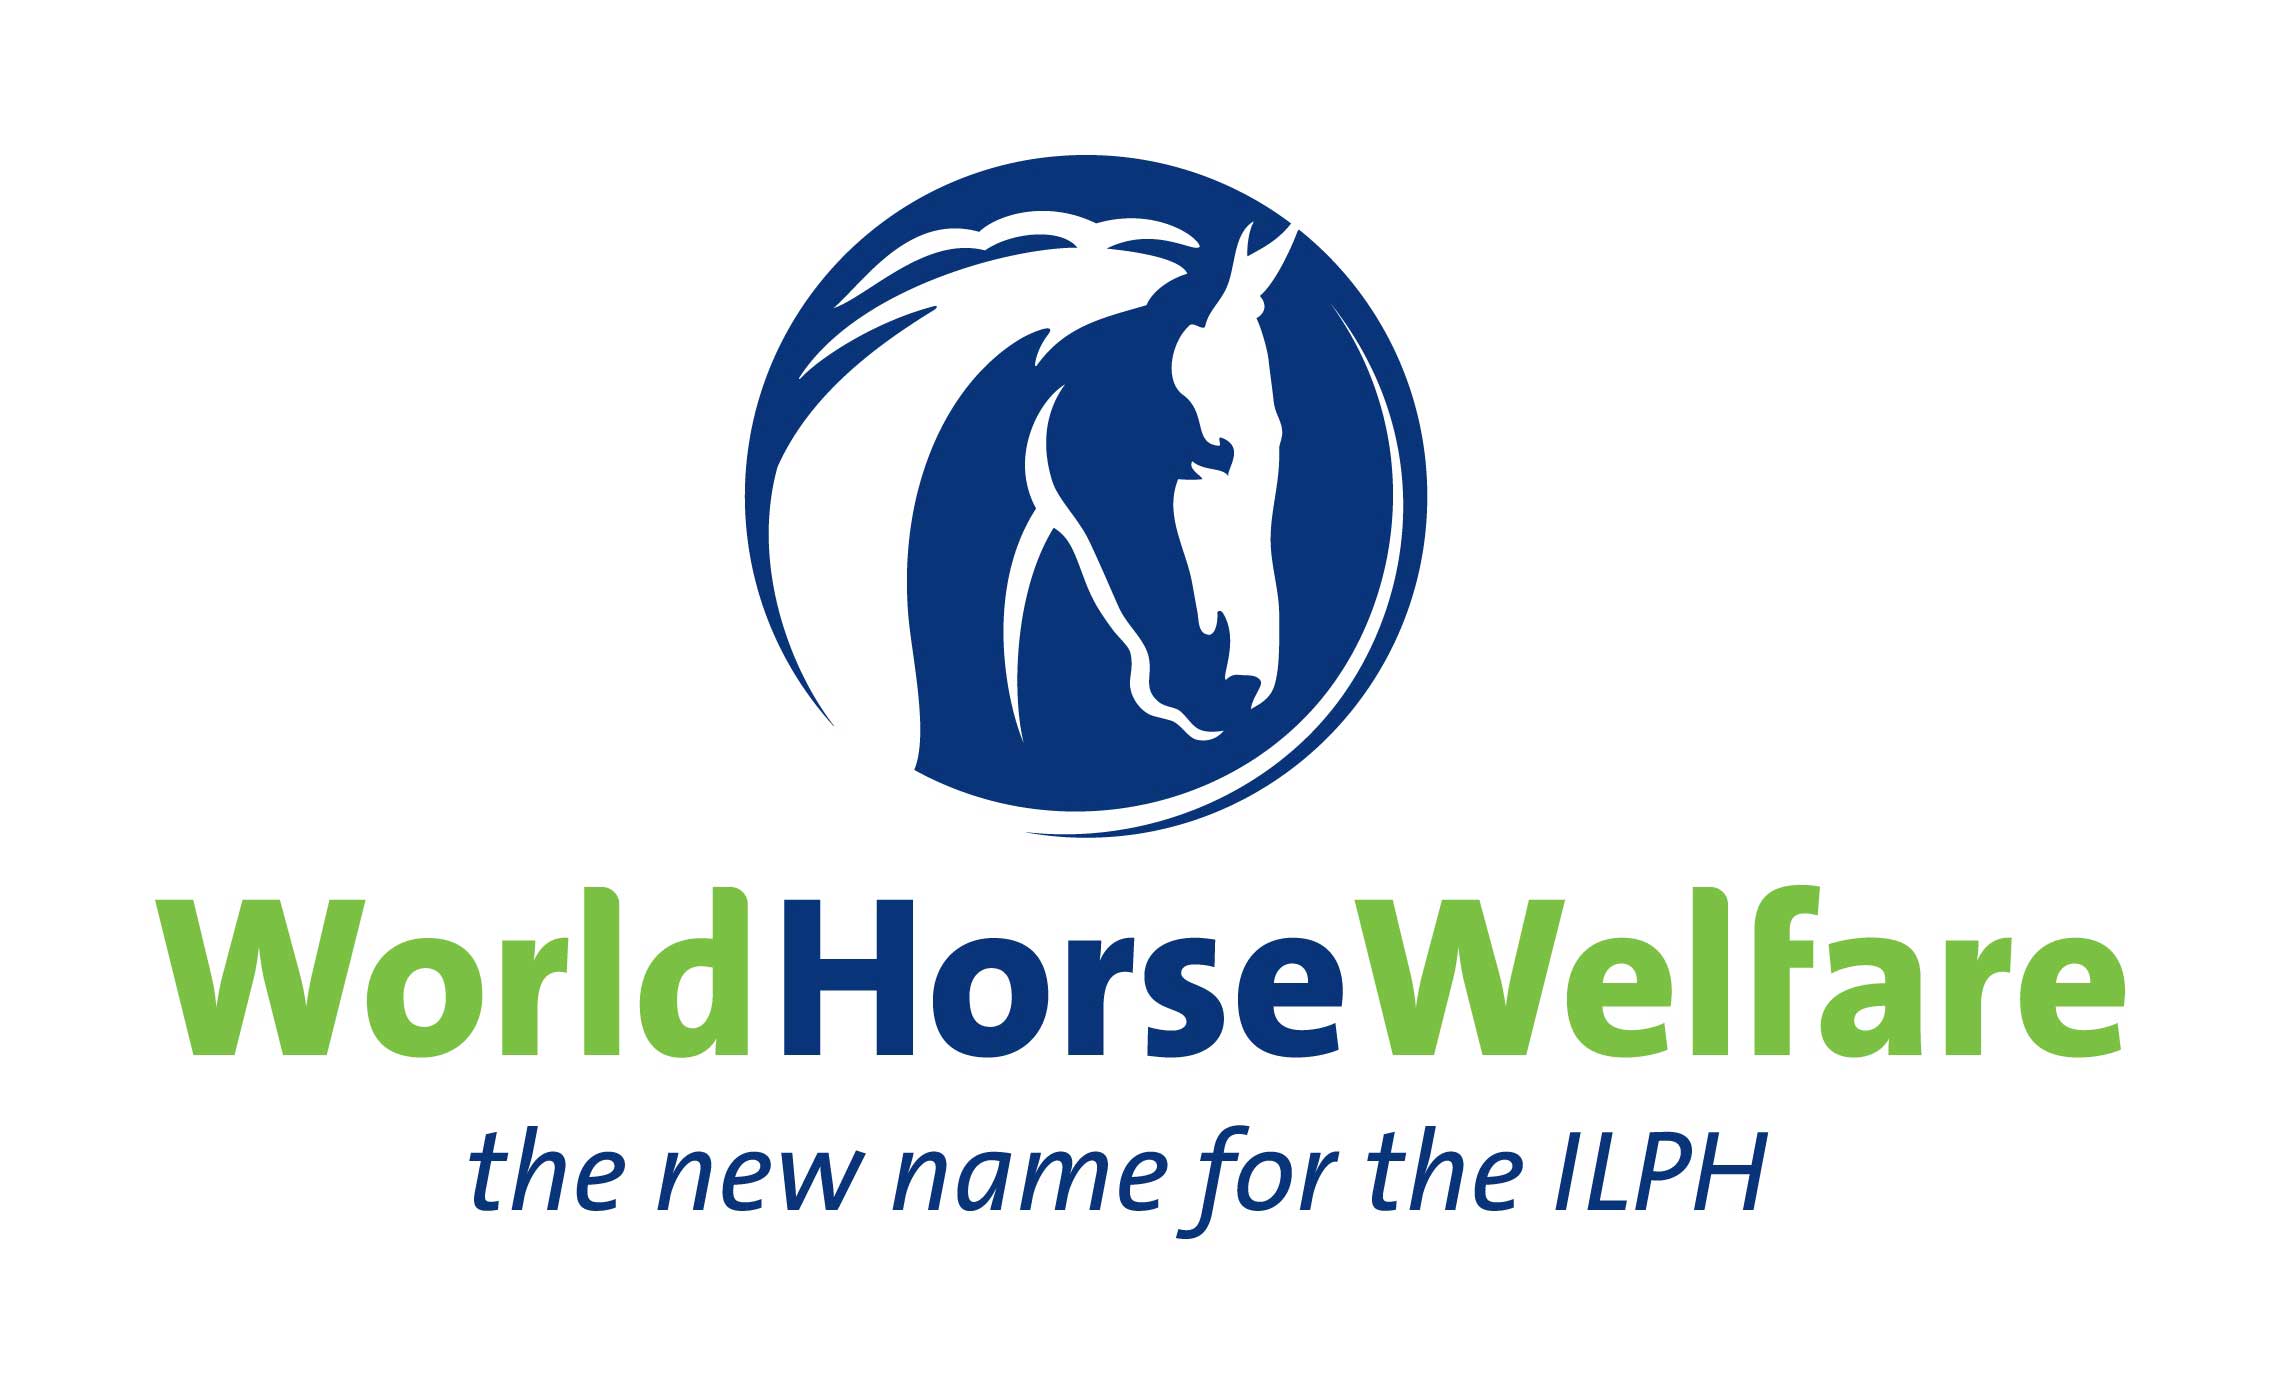 The new World Horse Welfare logo